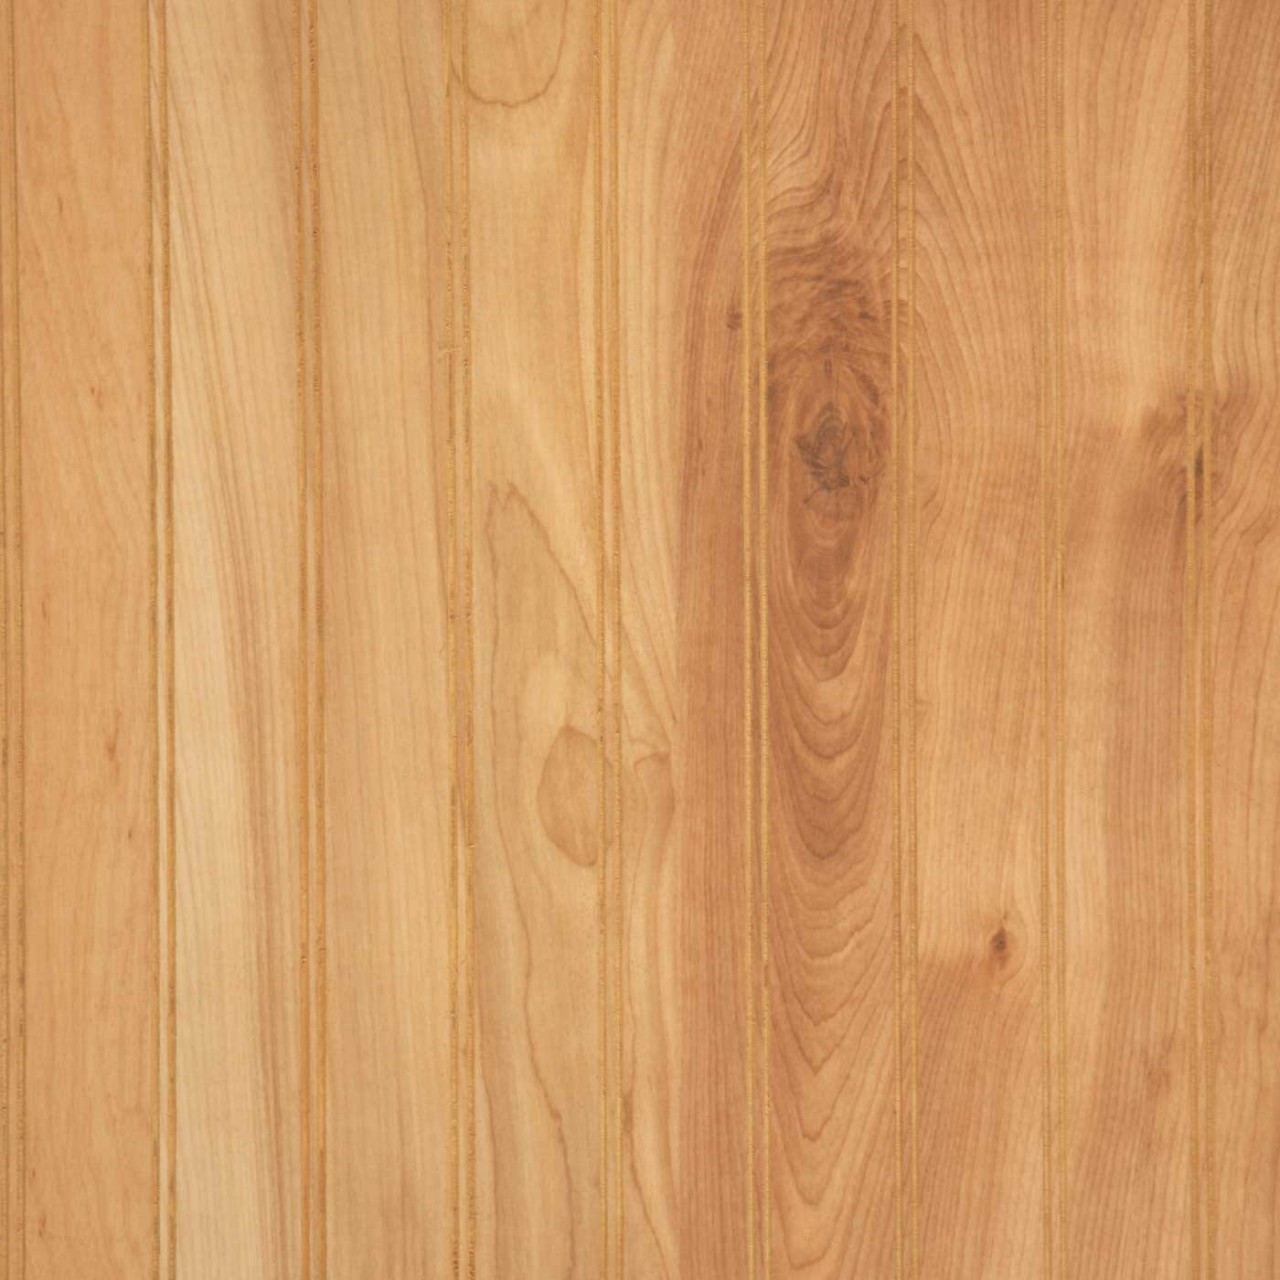 Wainscot Paneling | Beadboard Natural Birch Wall Paneling | Interior ...